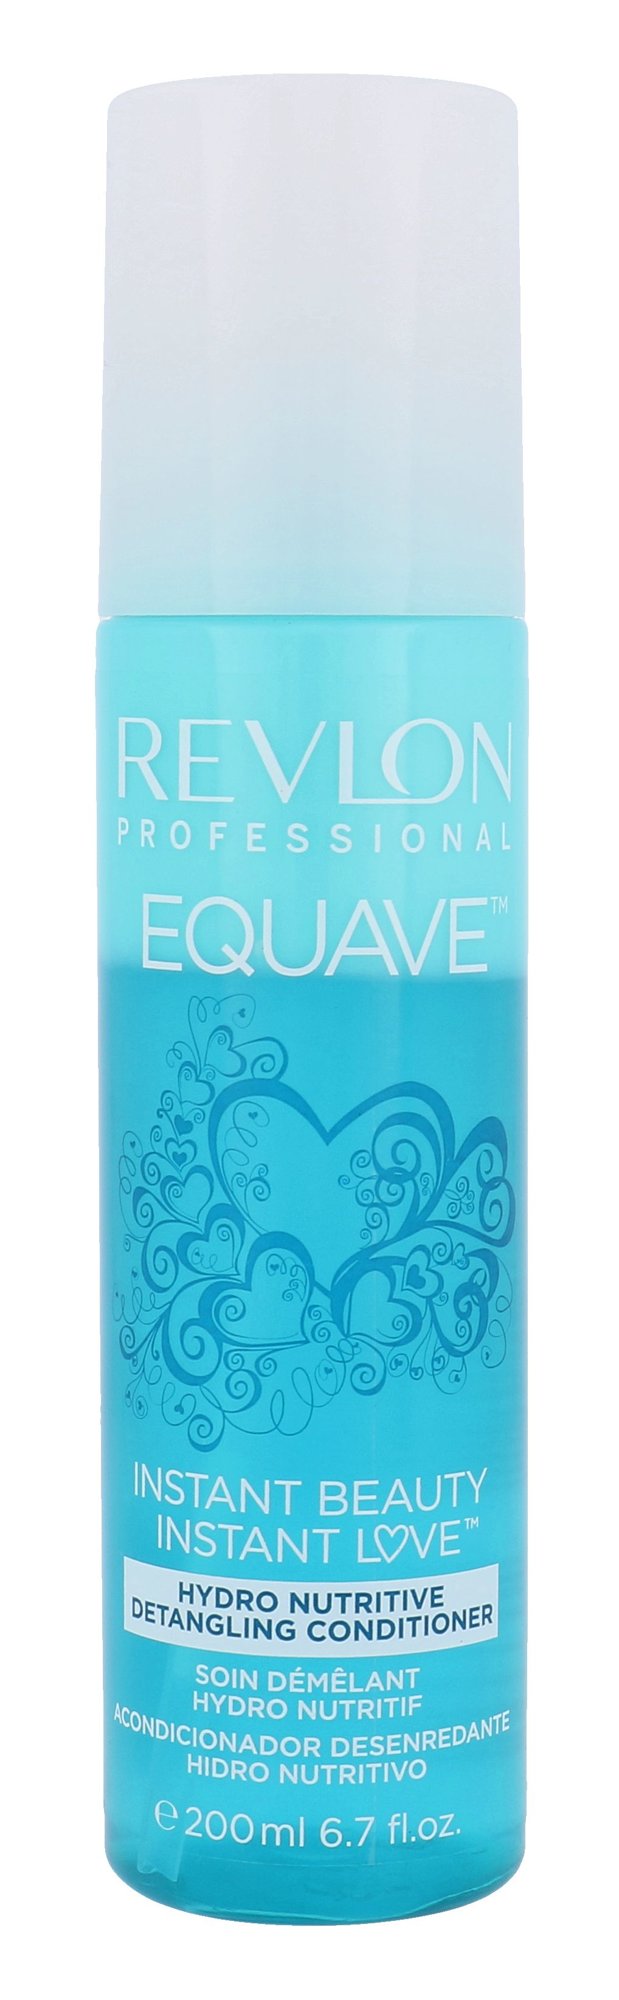 Revlon Professional Equave Hydro 200ml kondicionierius